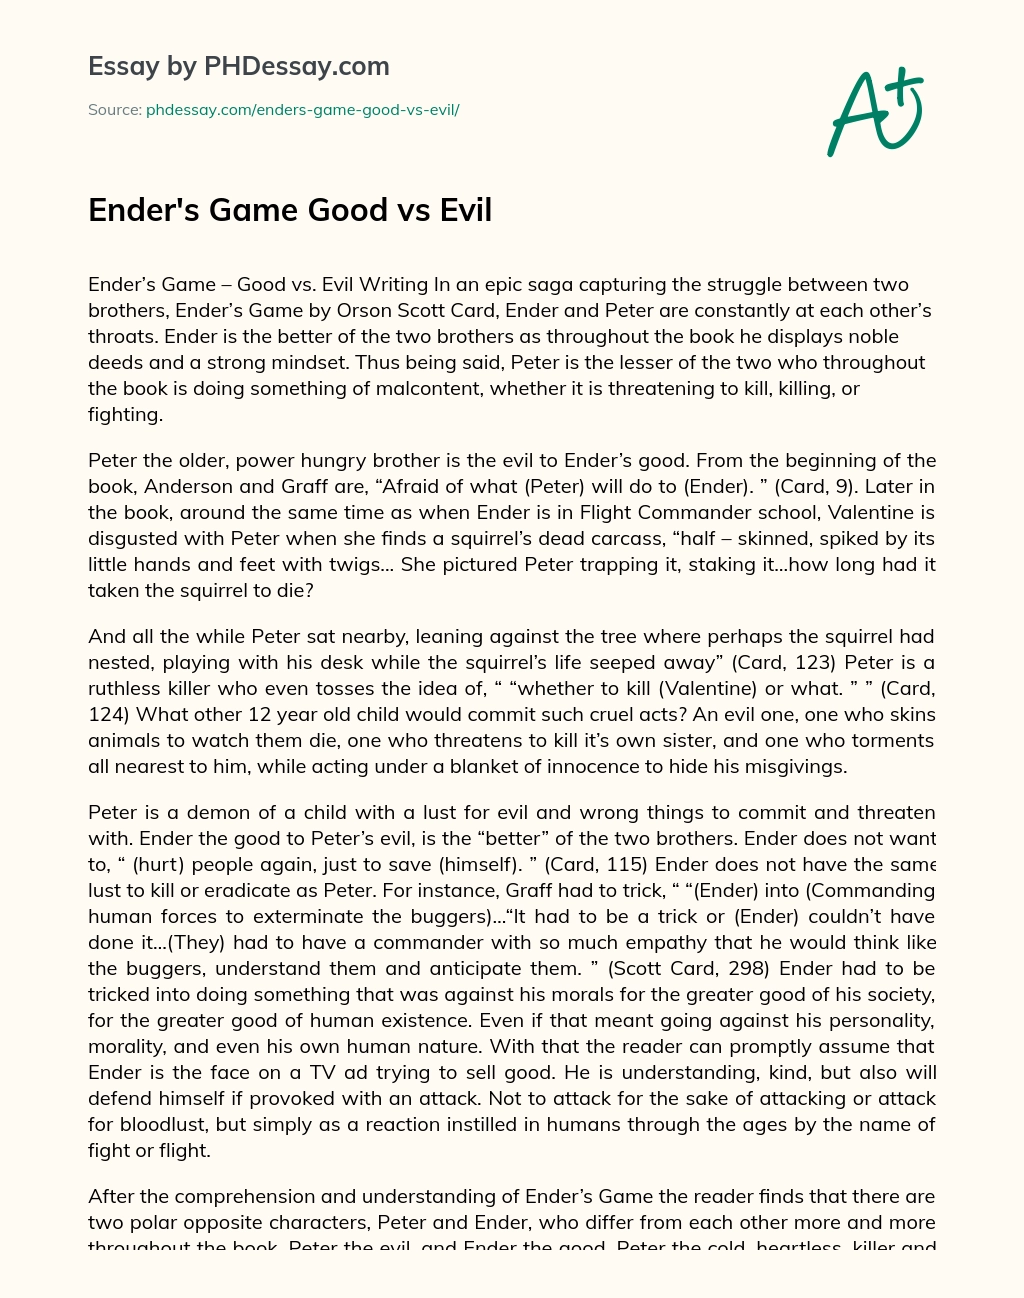 Ender’s Game Good vs Evil essay